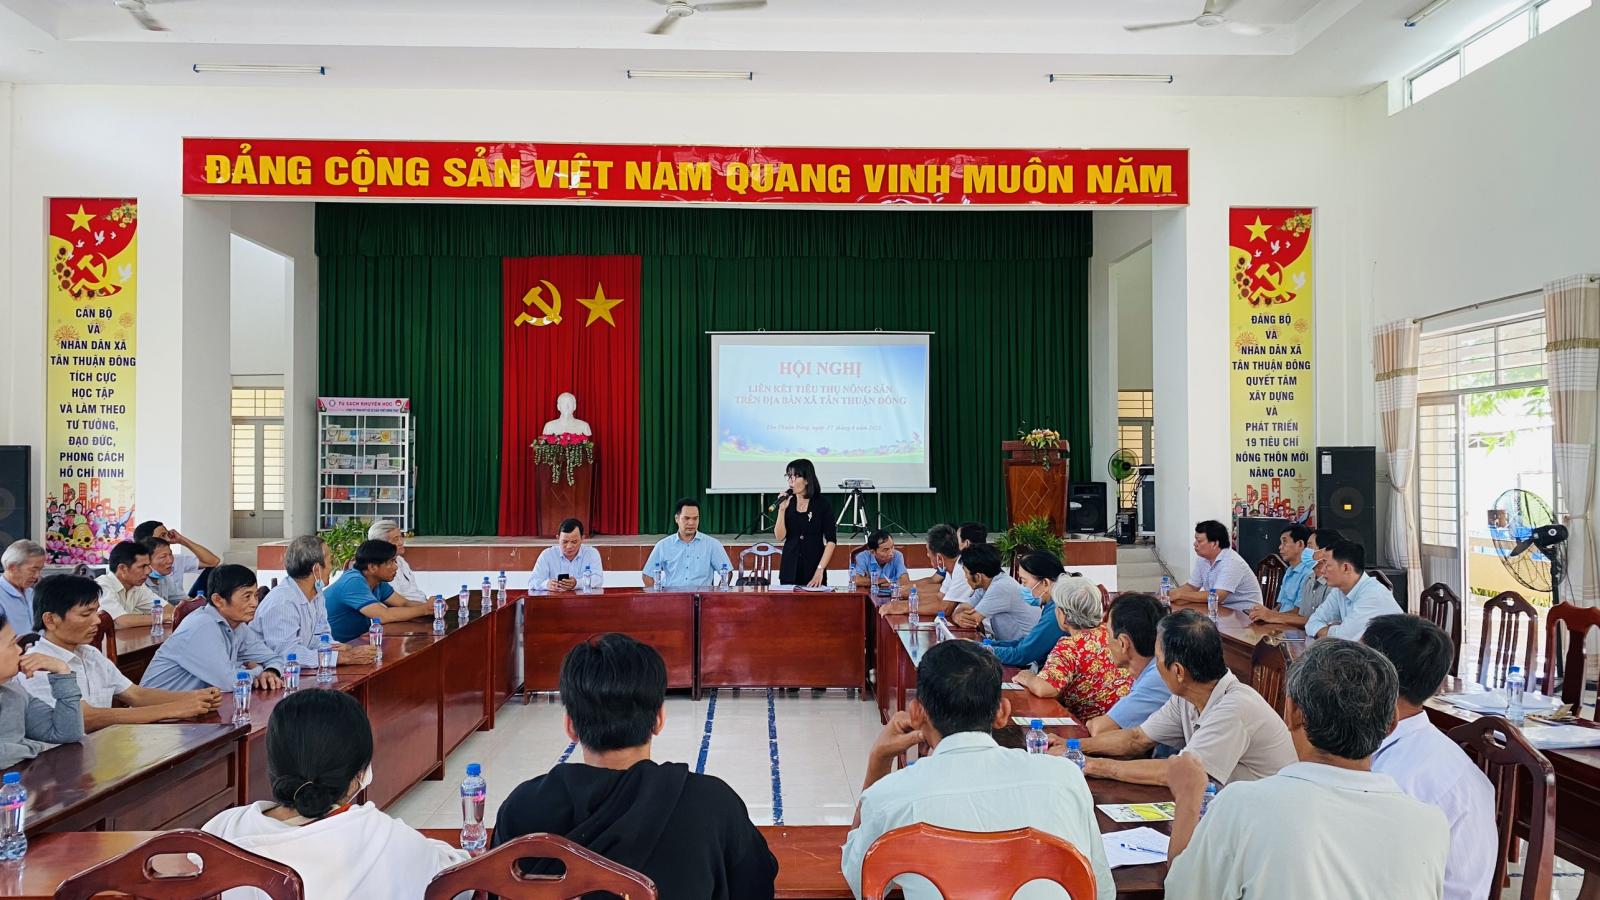 Hội nghị liên kết tiêu thụ nông sản trên địa bàn xã Tân Thuận Đông